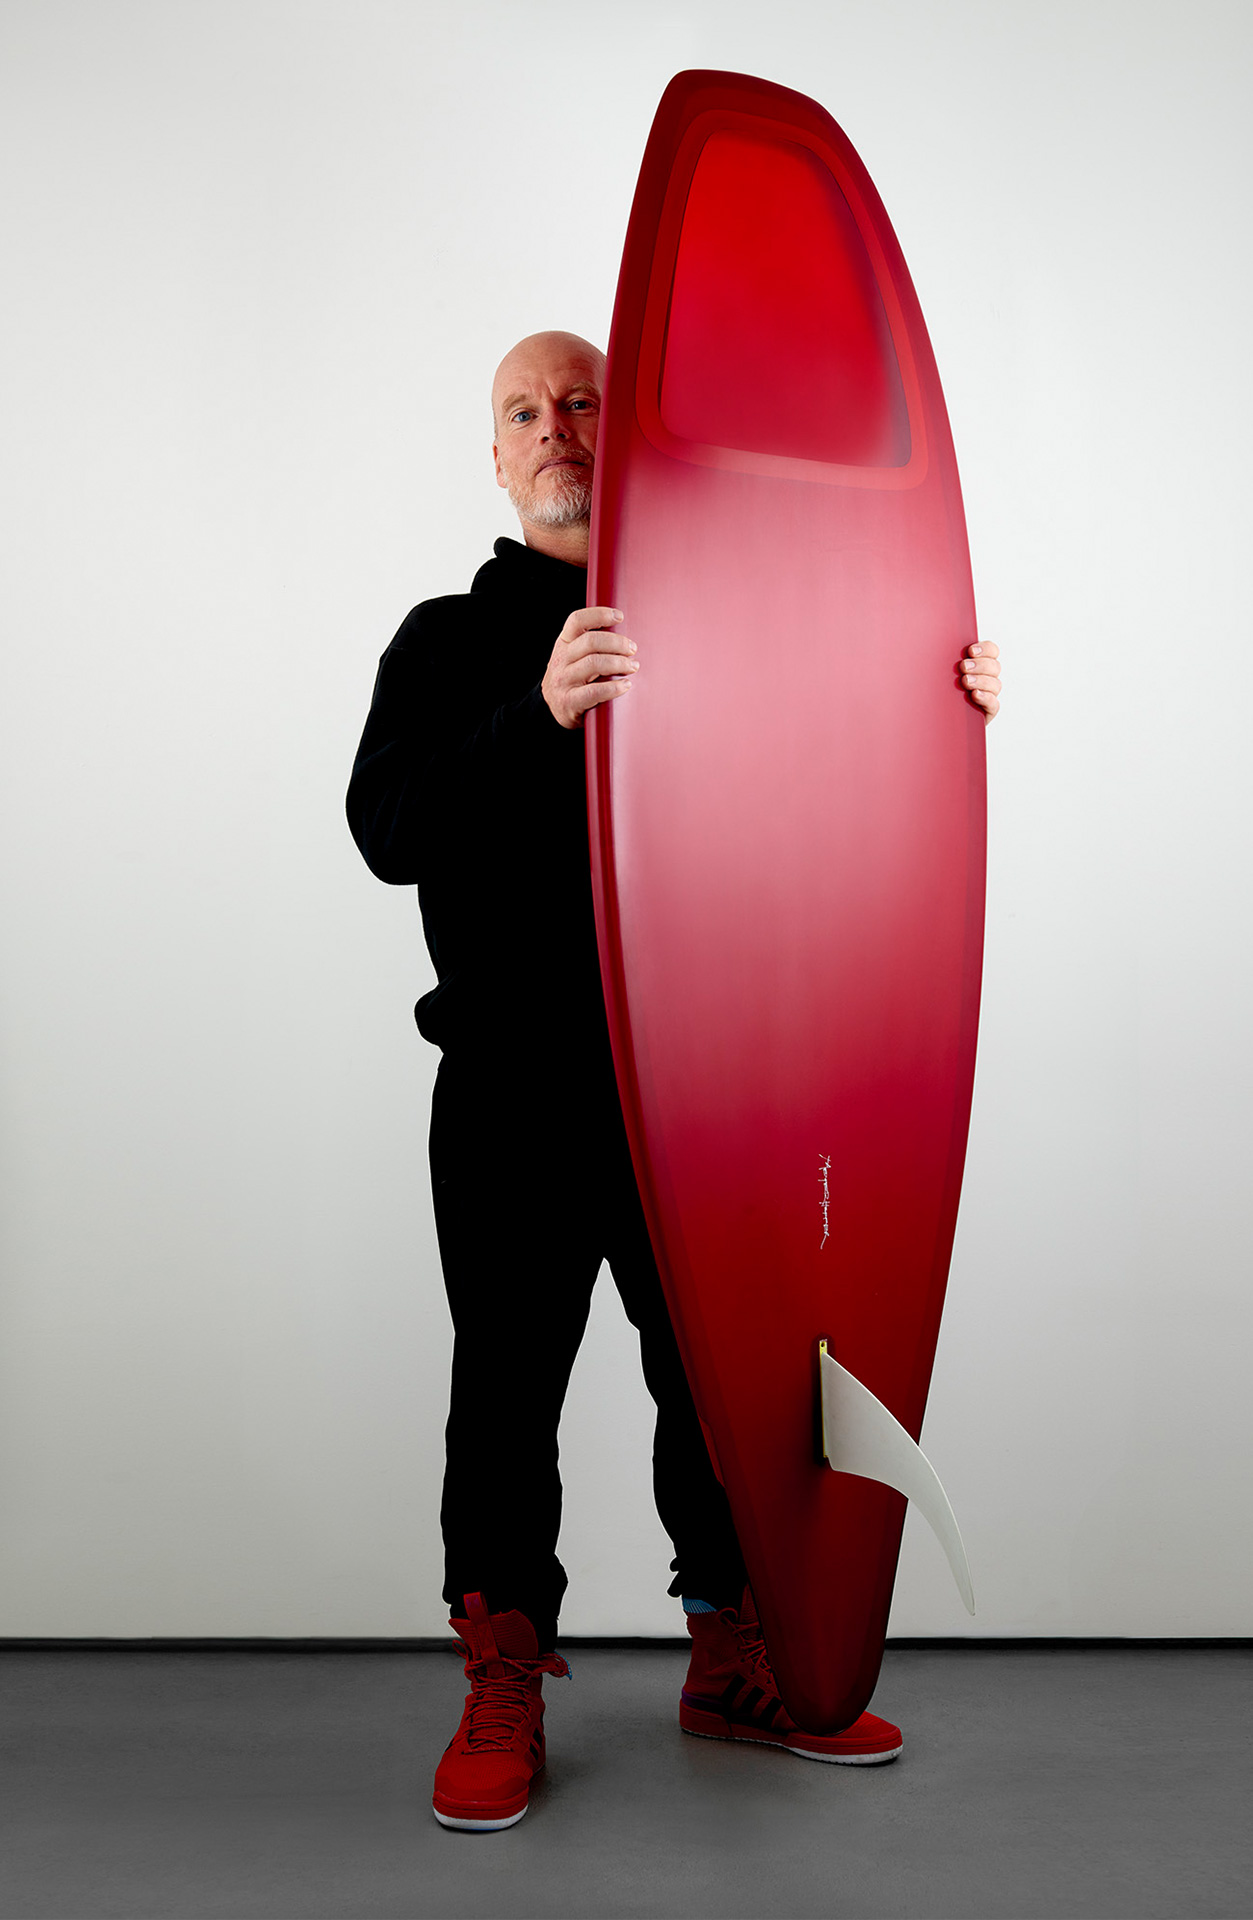 Slip In – Meyerhoffer Surf